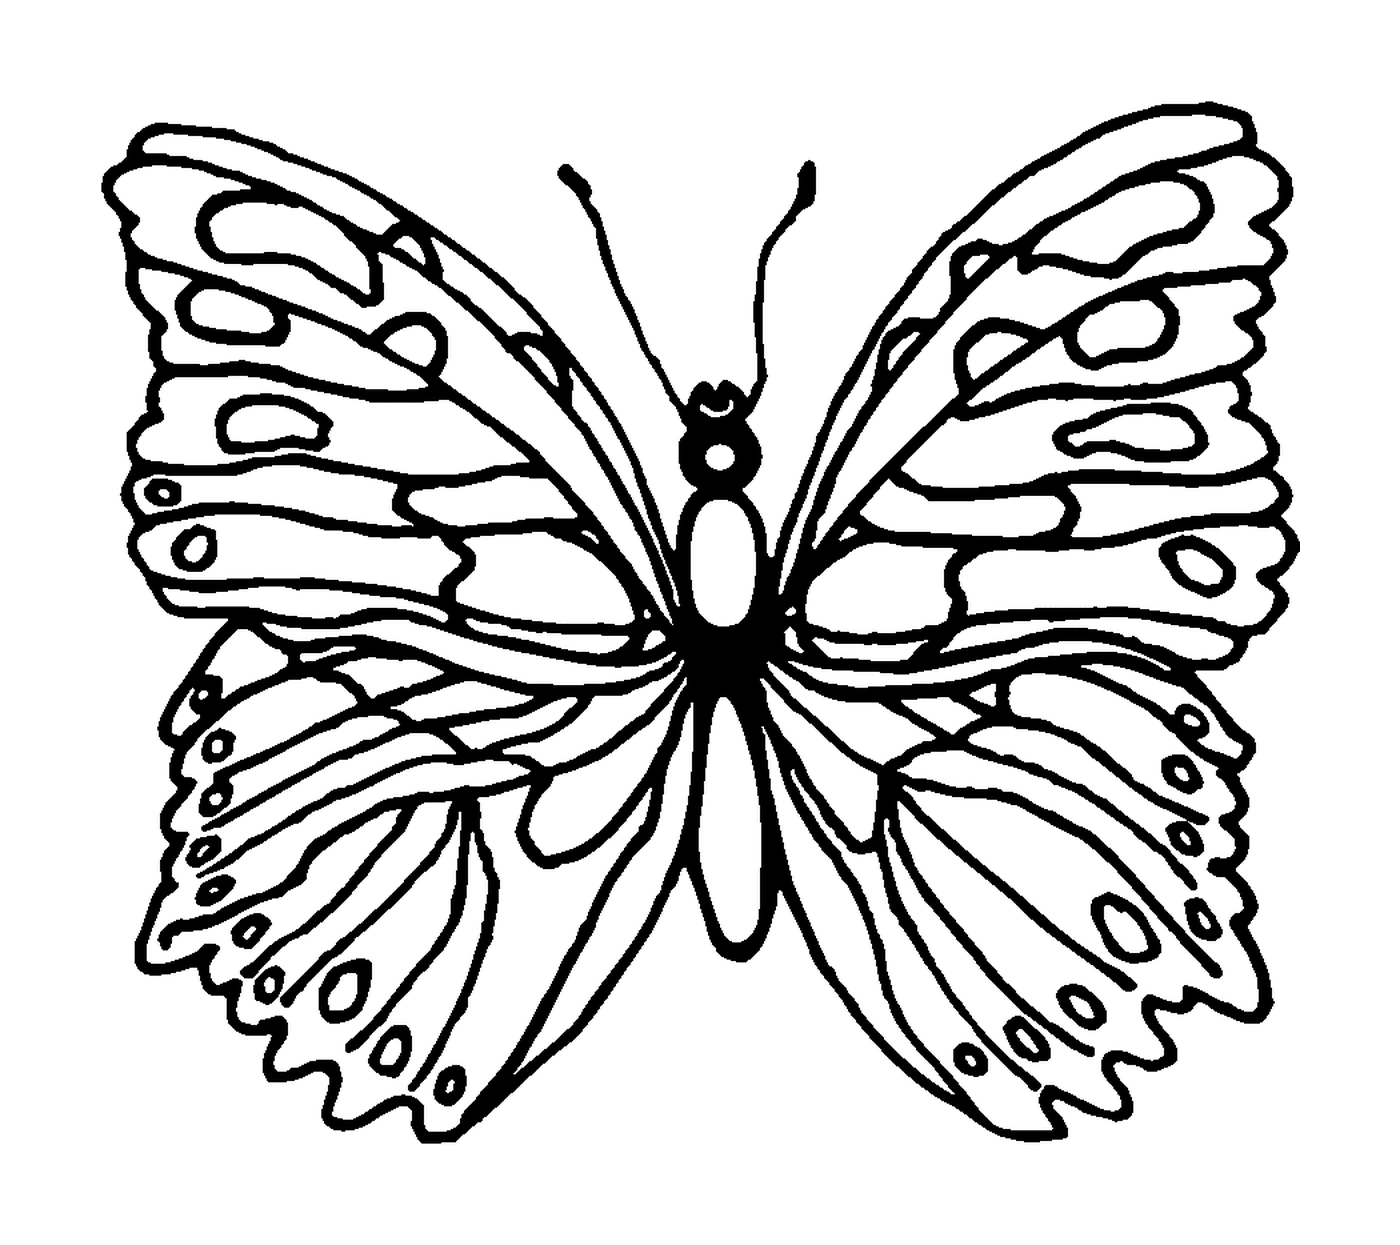  borboleta delicada e graciosa 